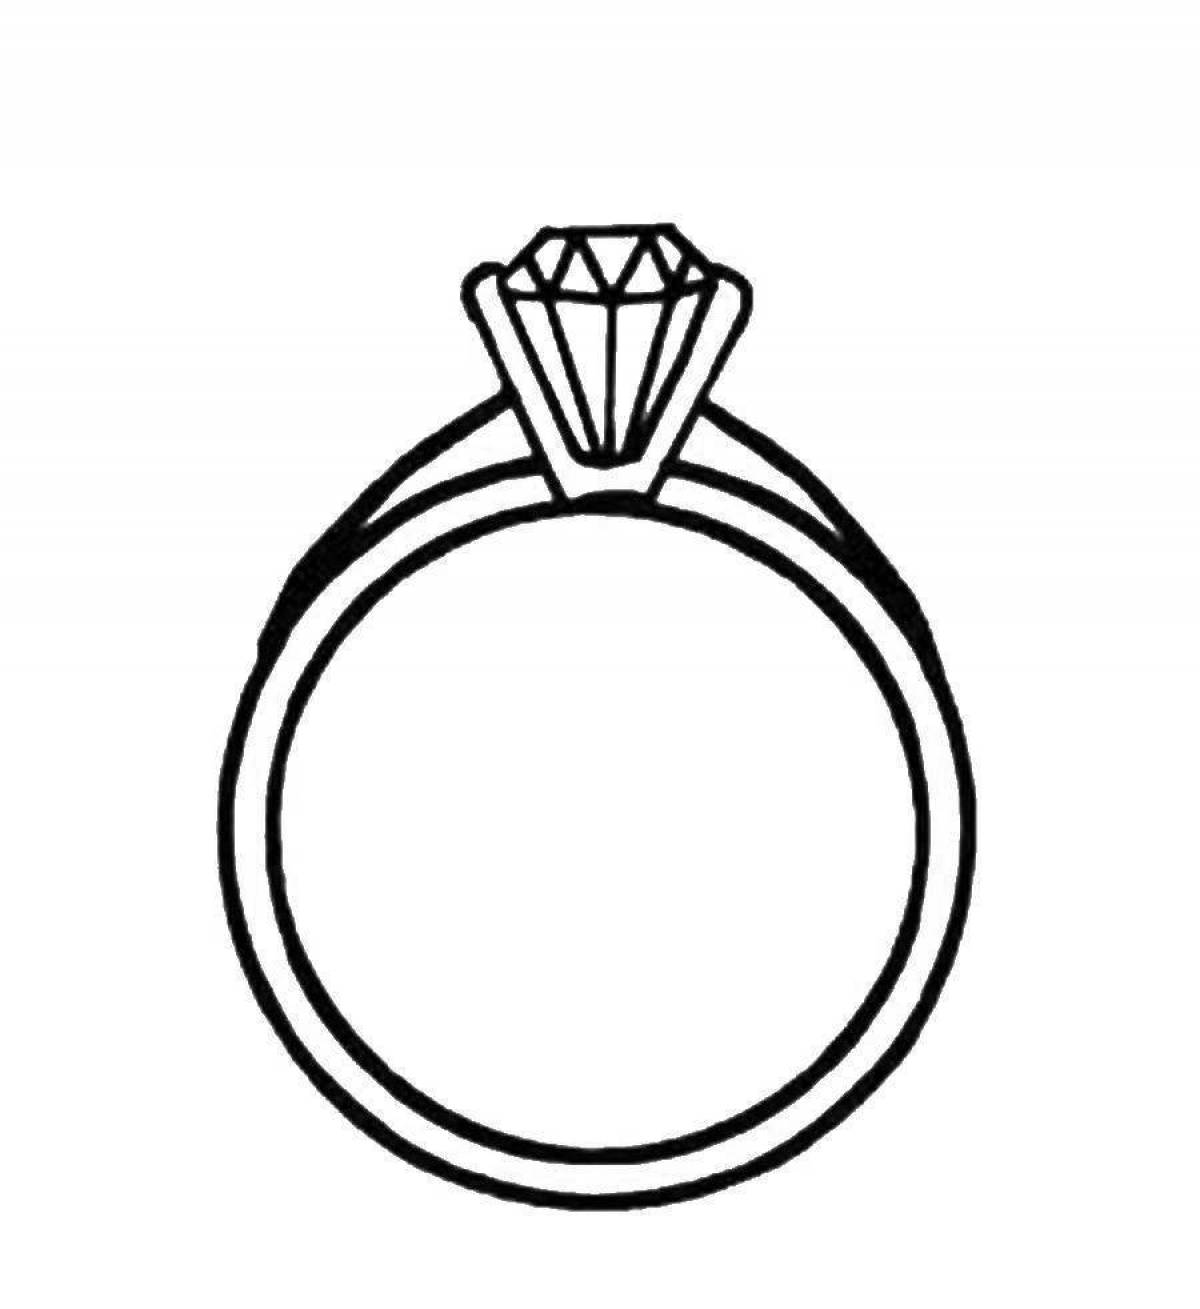 Exquisite diamond ring coloring